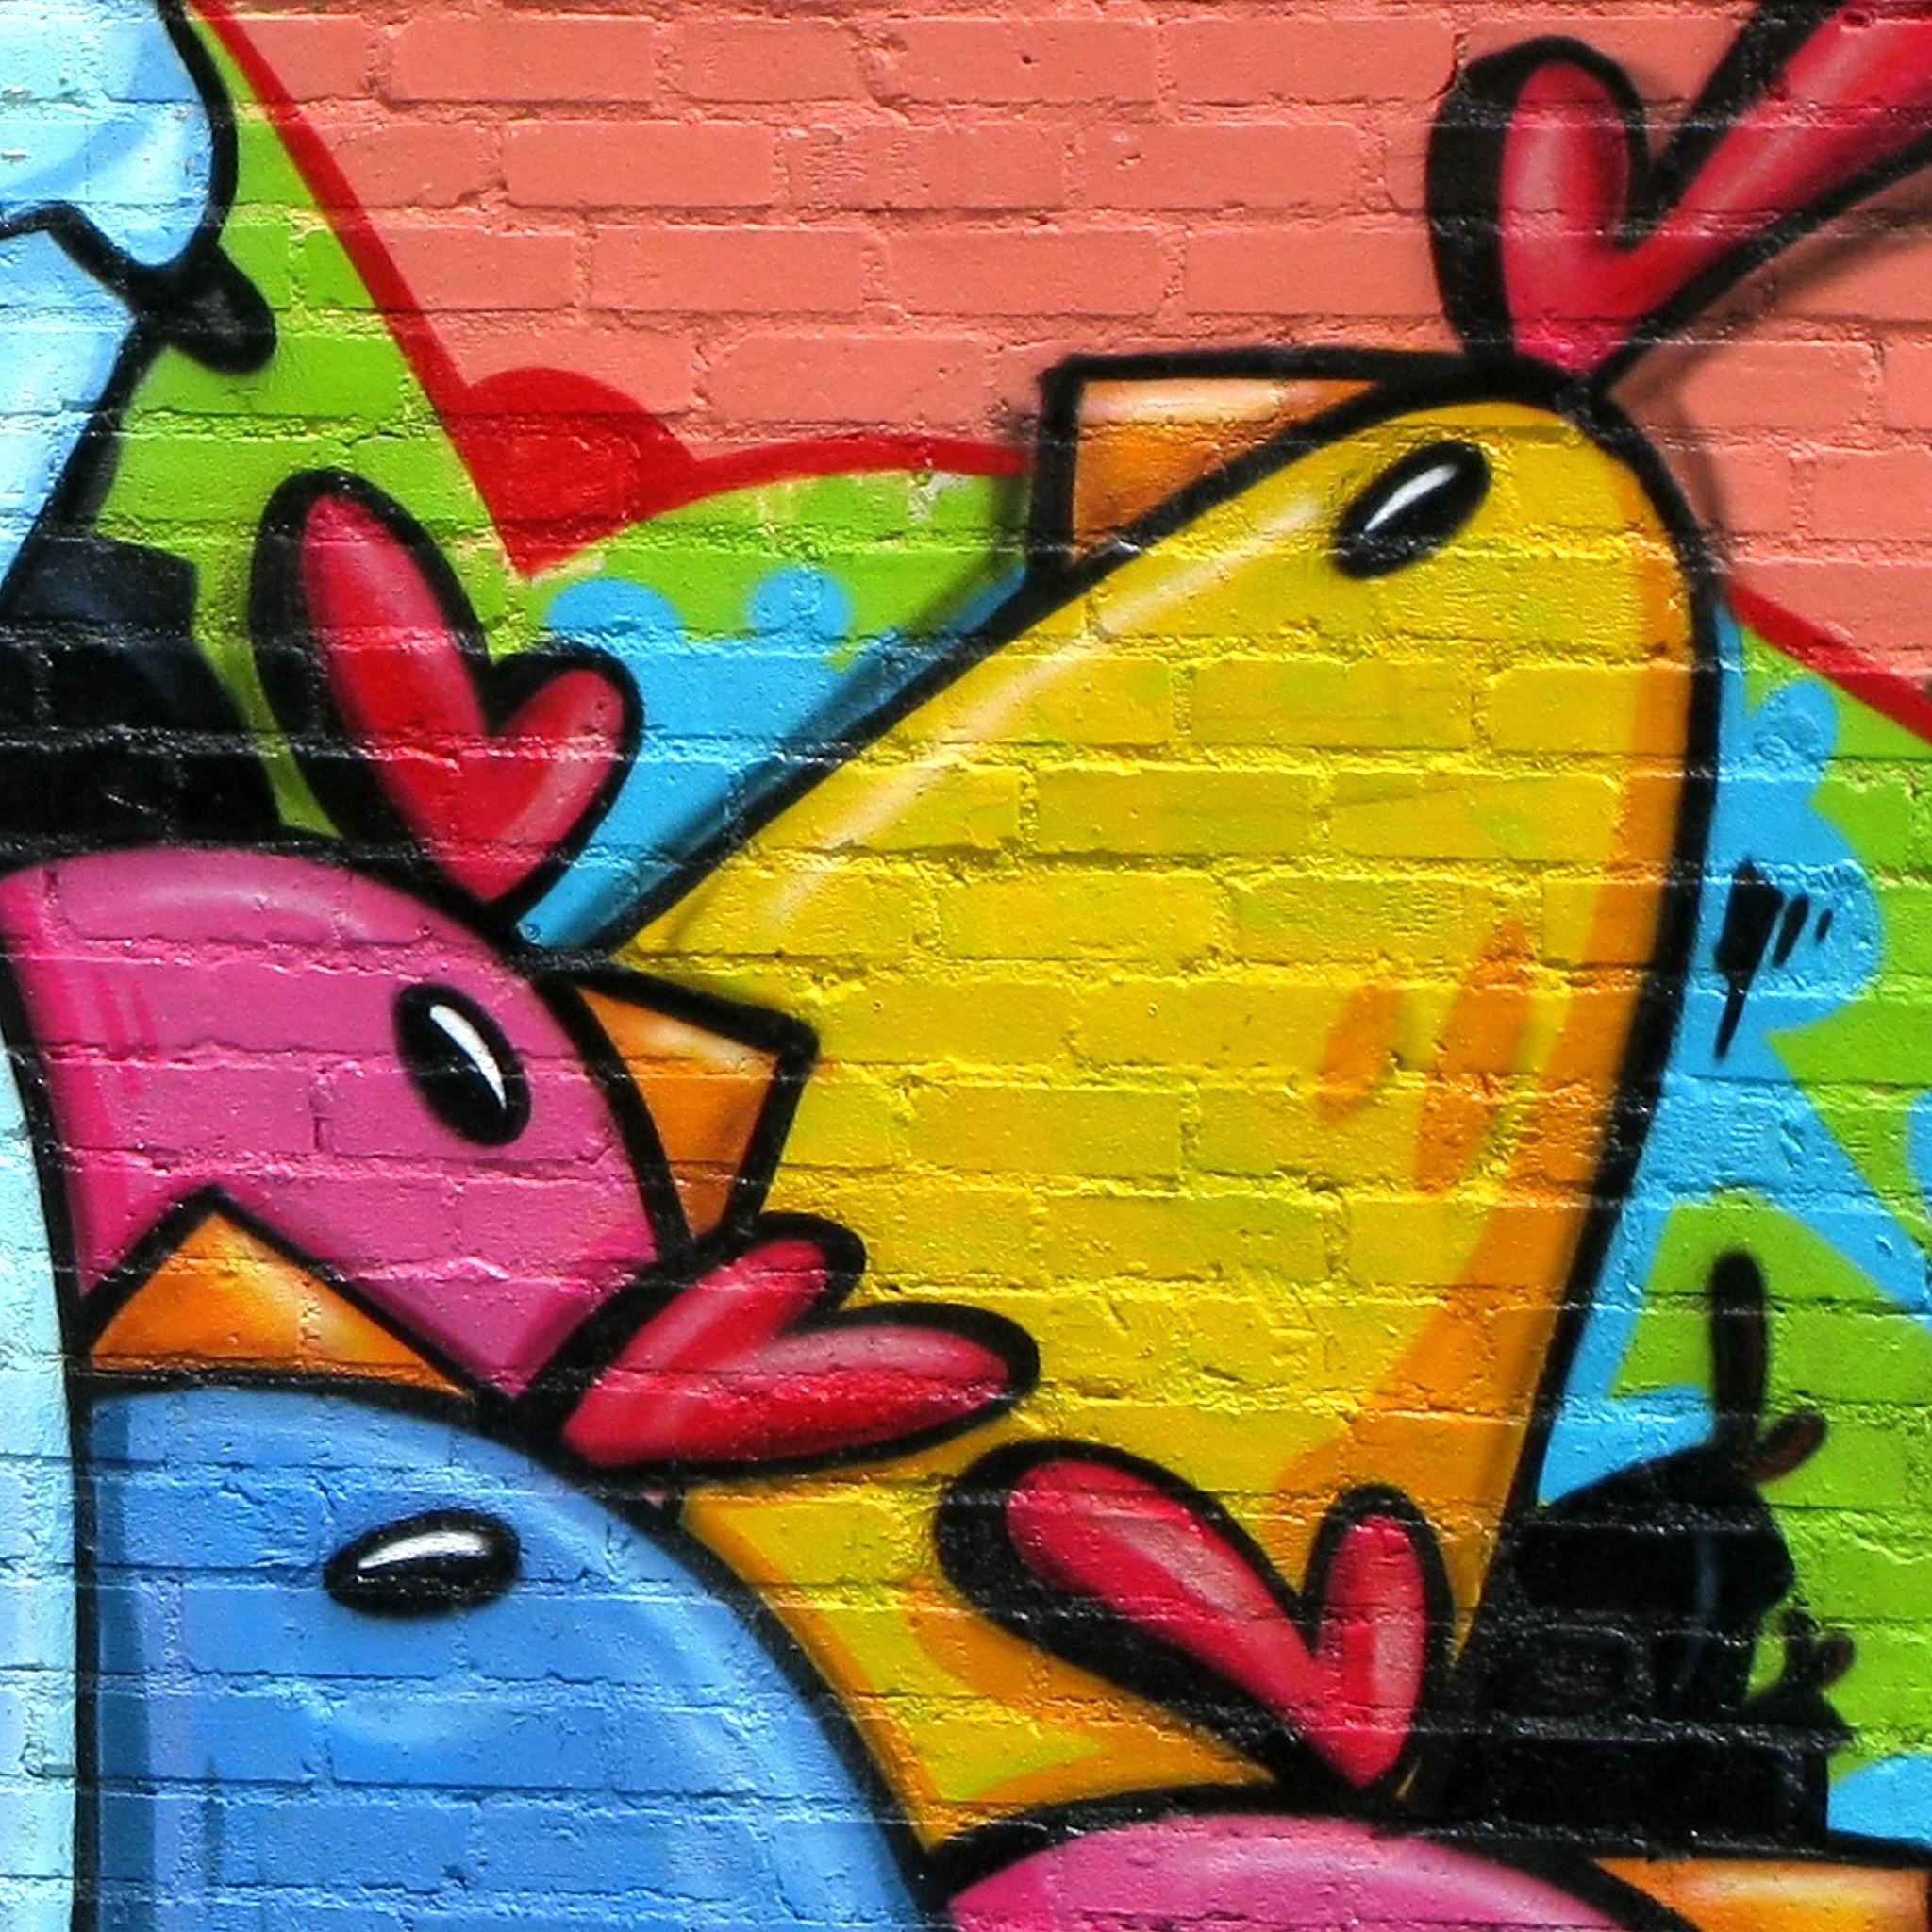 Angry Birds Brick Wall Graffiti Ipad Air Wallpapers Free Download